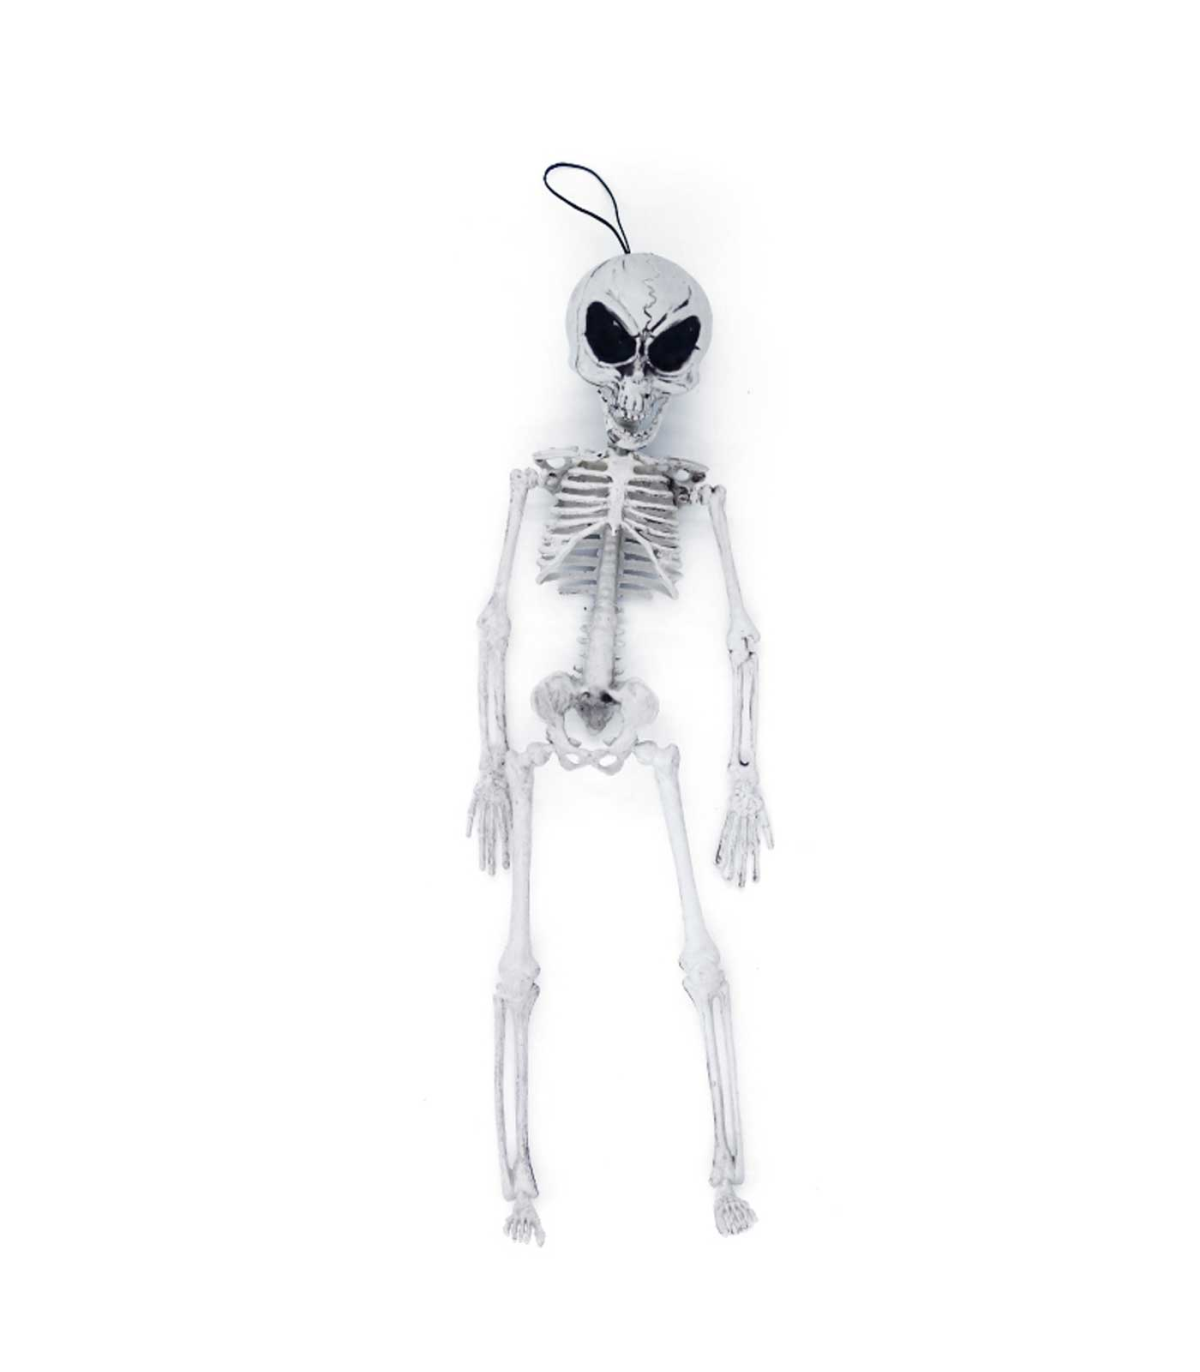 Modernizar Emulación el viento es fuerte Tradineur - Esqueleto de alien para Halloween - Fabricado en plástico -  Adorno para decoración - Longitud 42 cm - Color Blanco